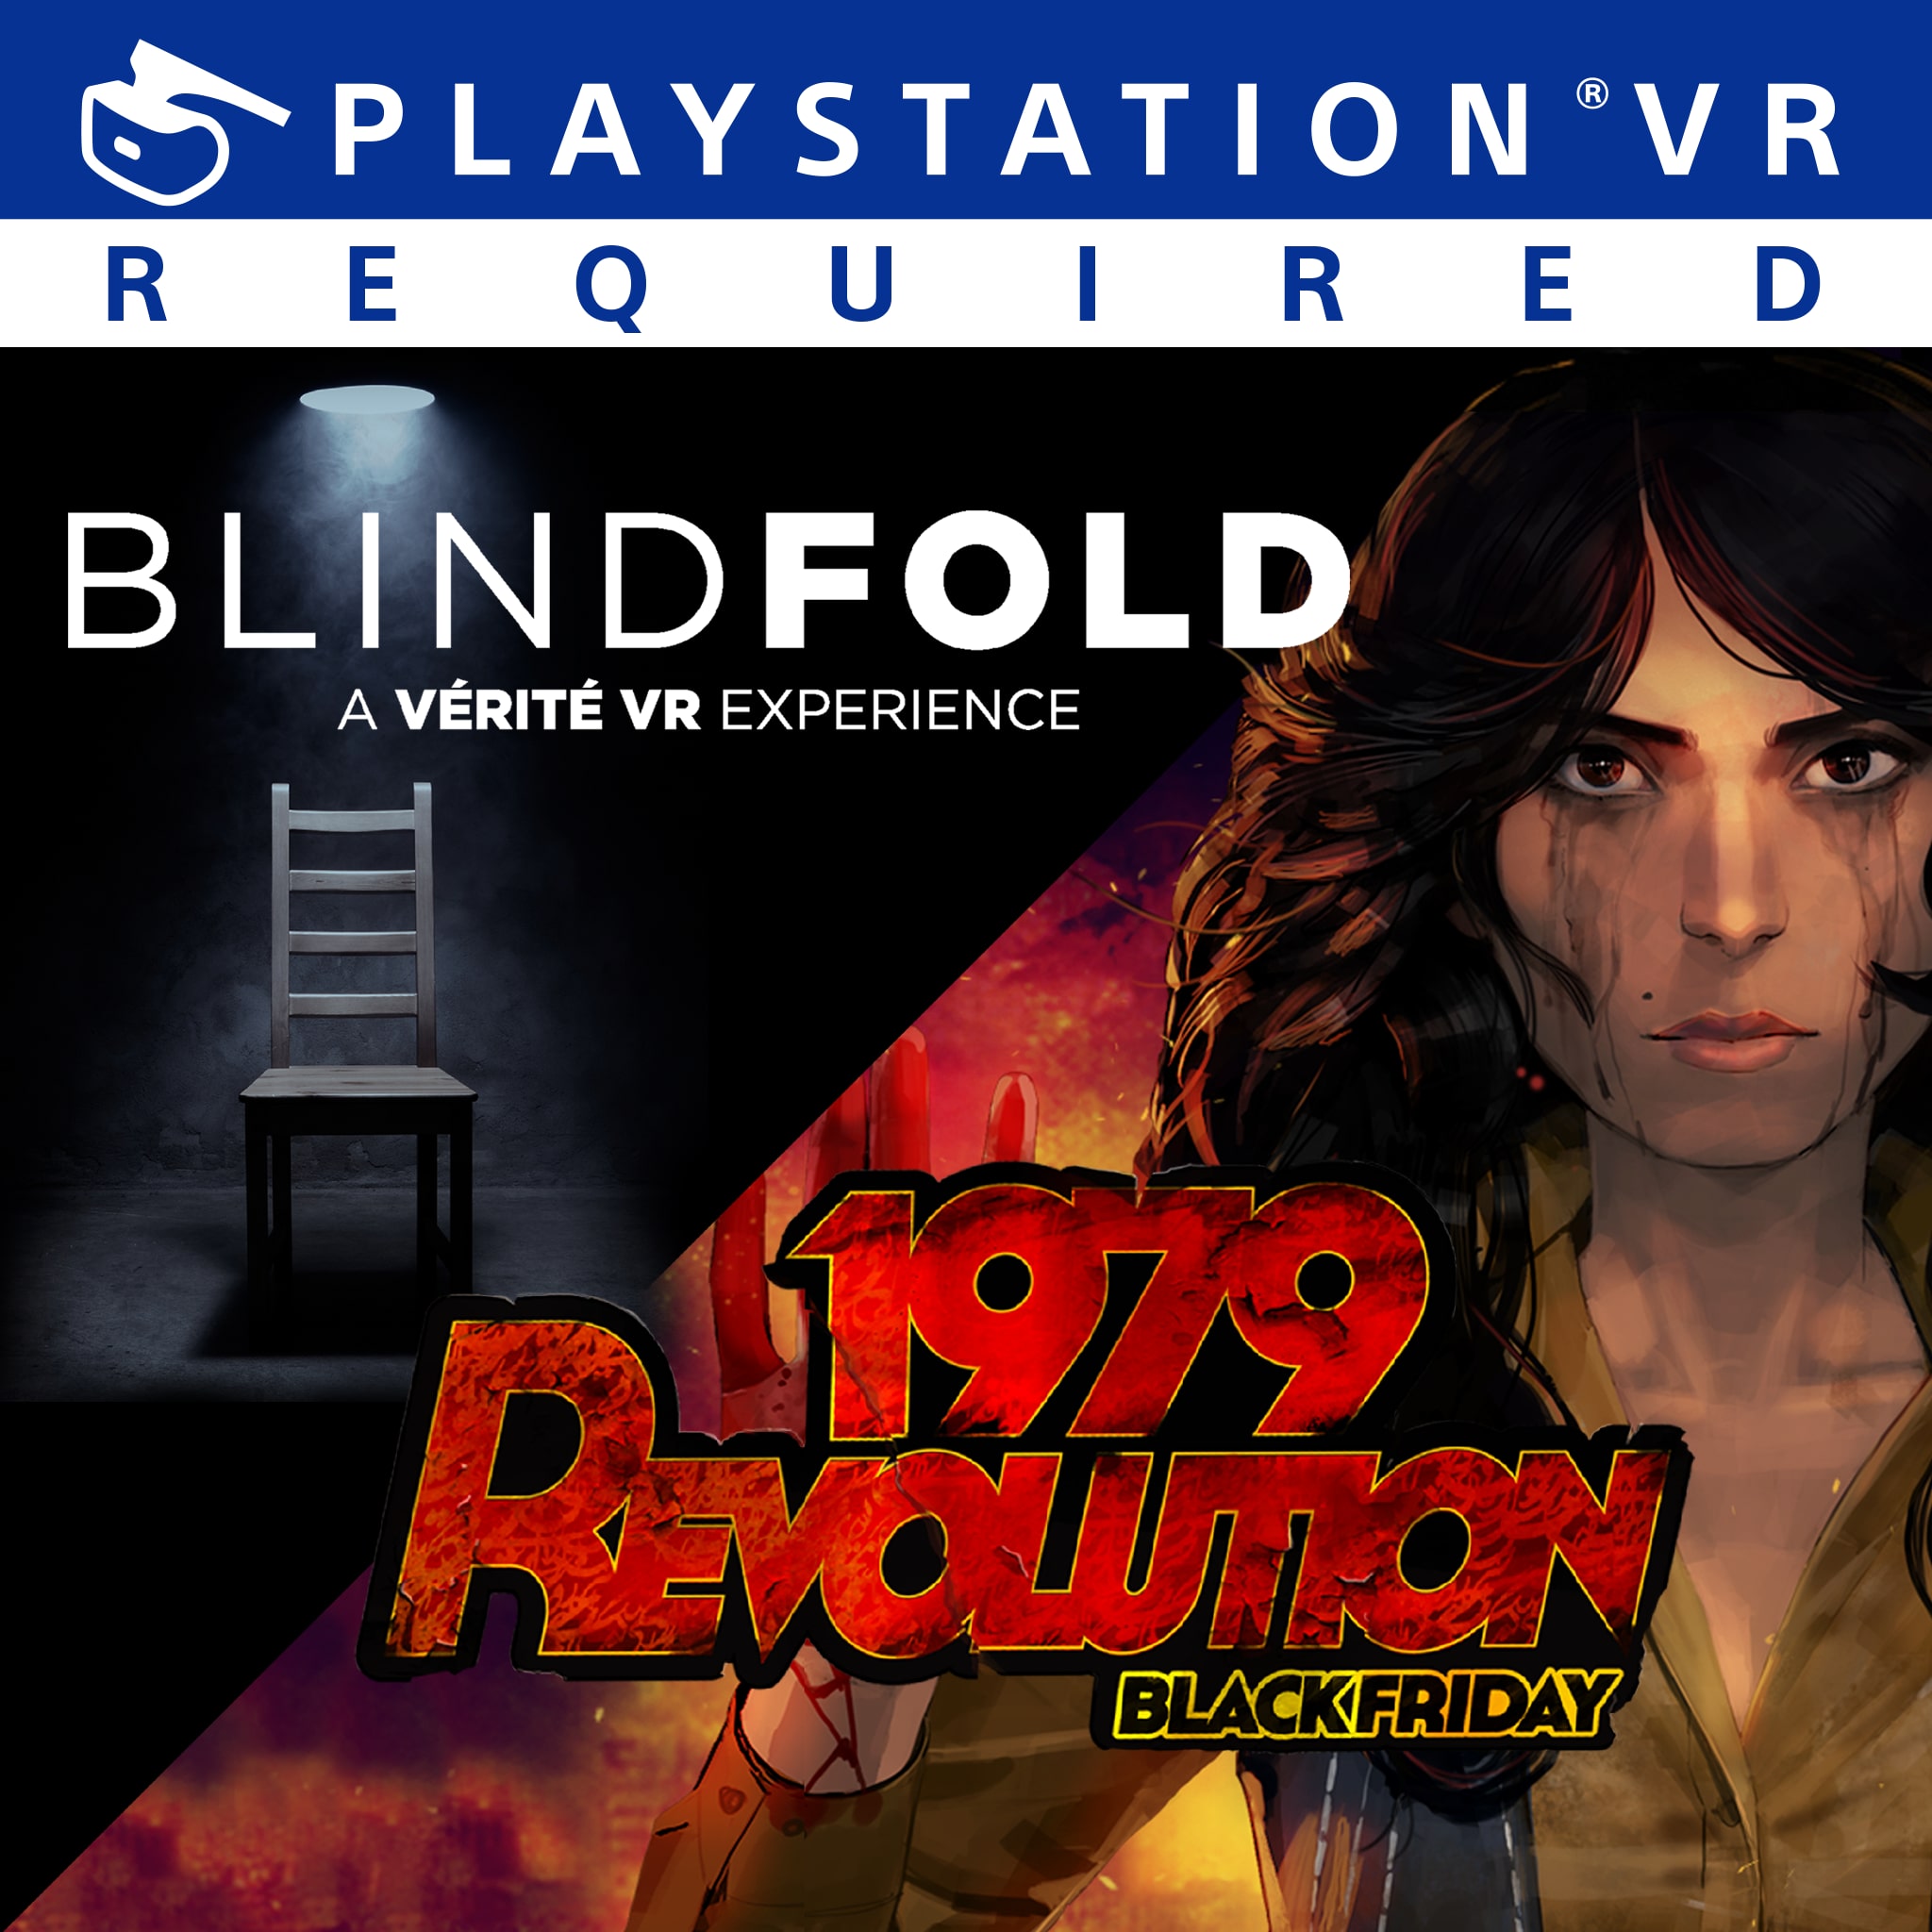 1979 Revolution: Black Friday and Blindfold Bundle